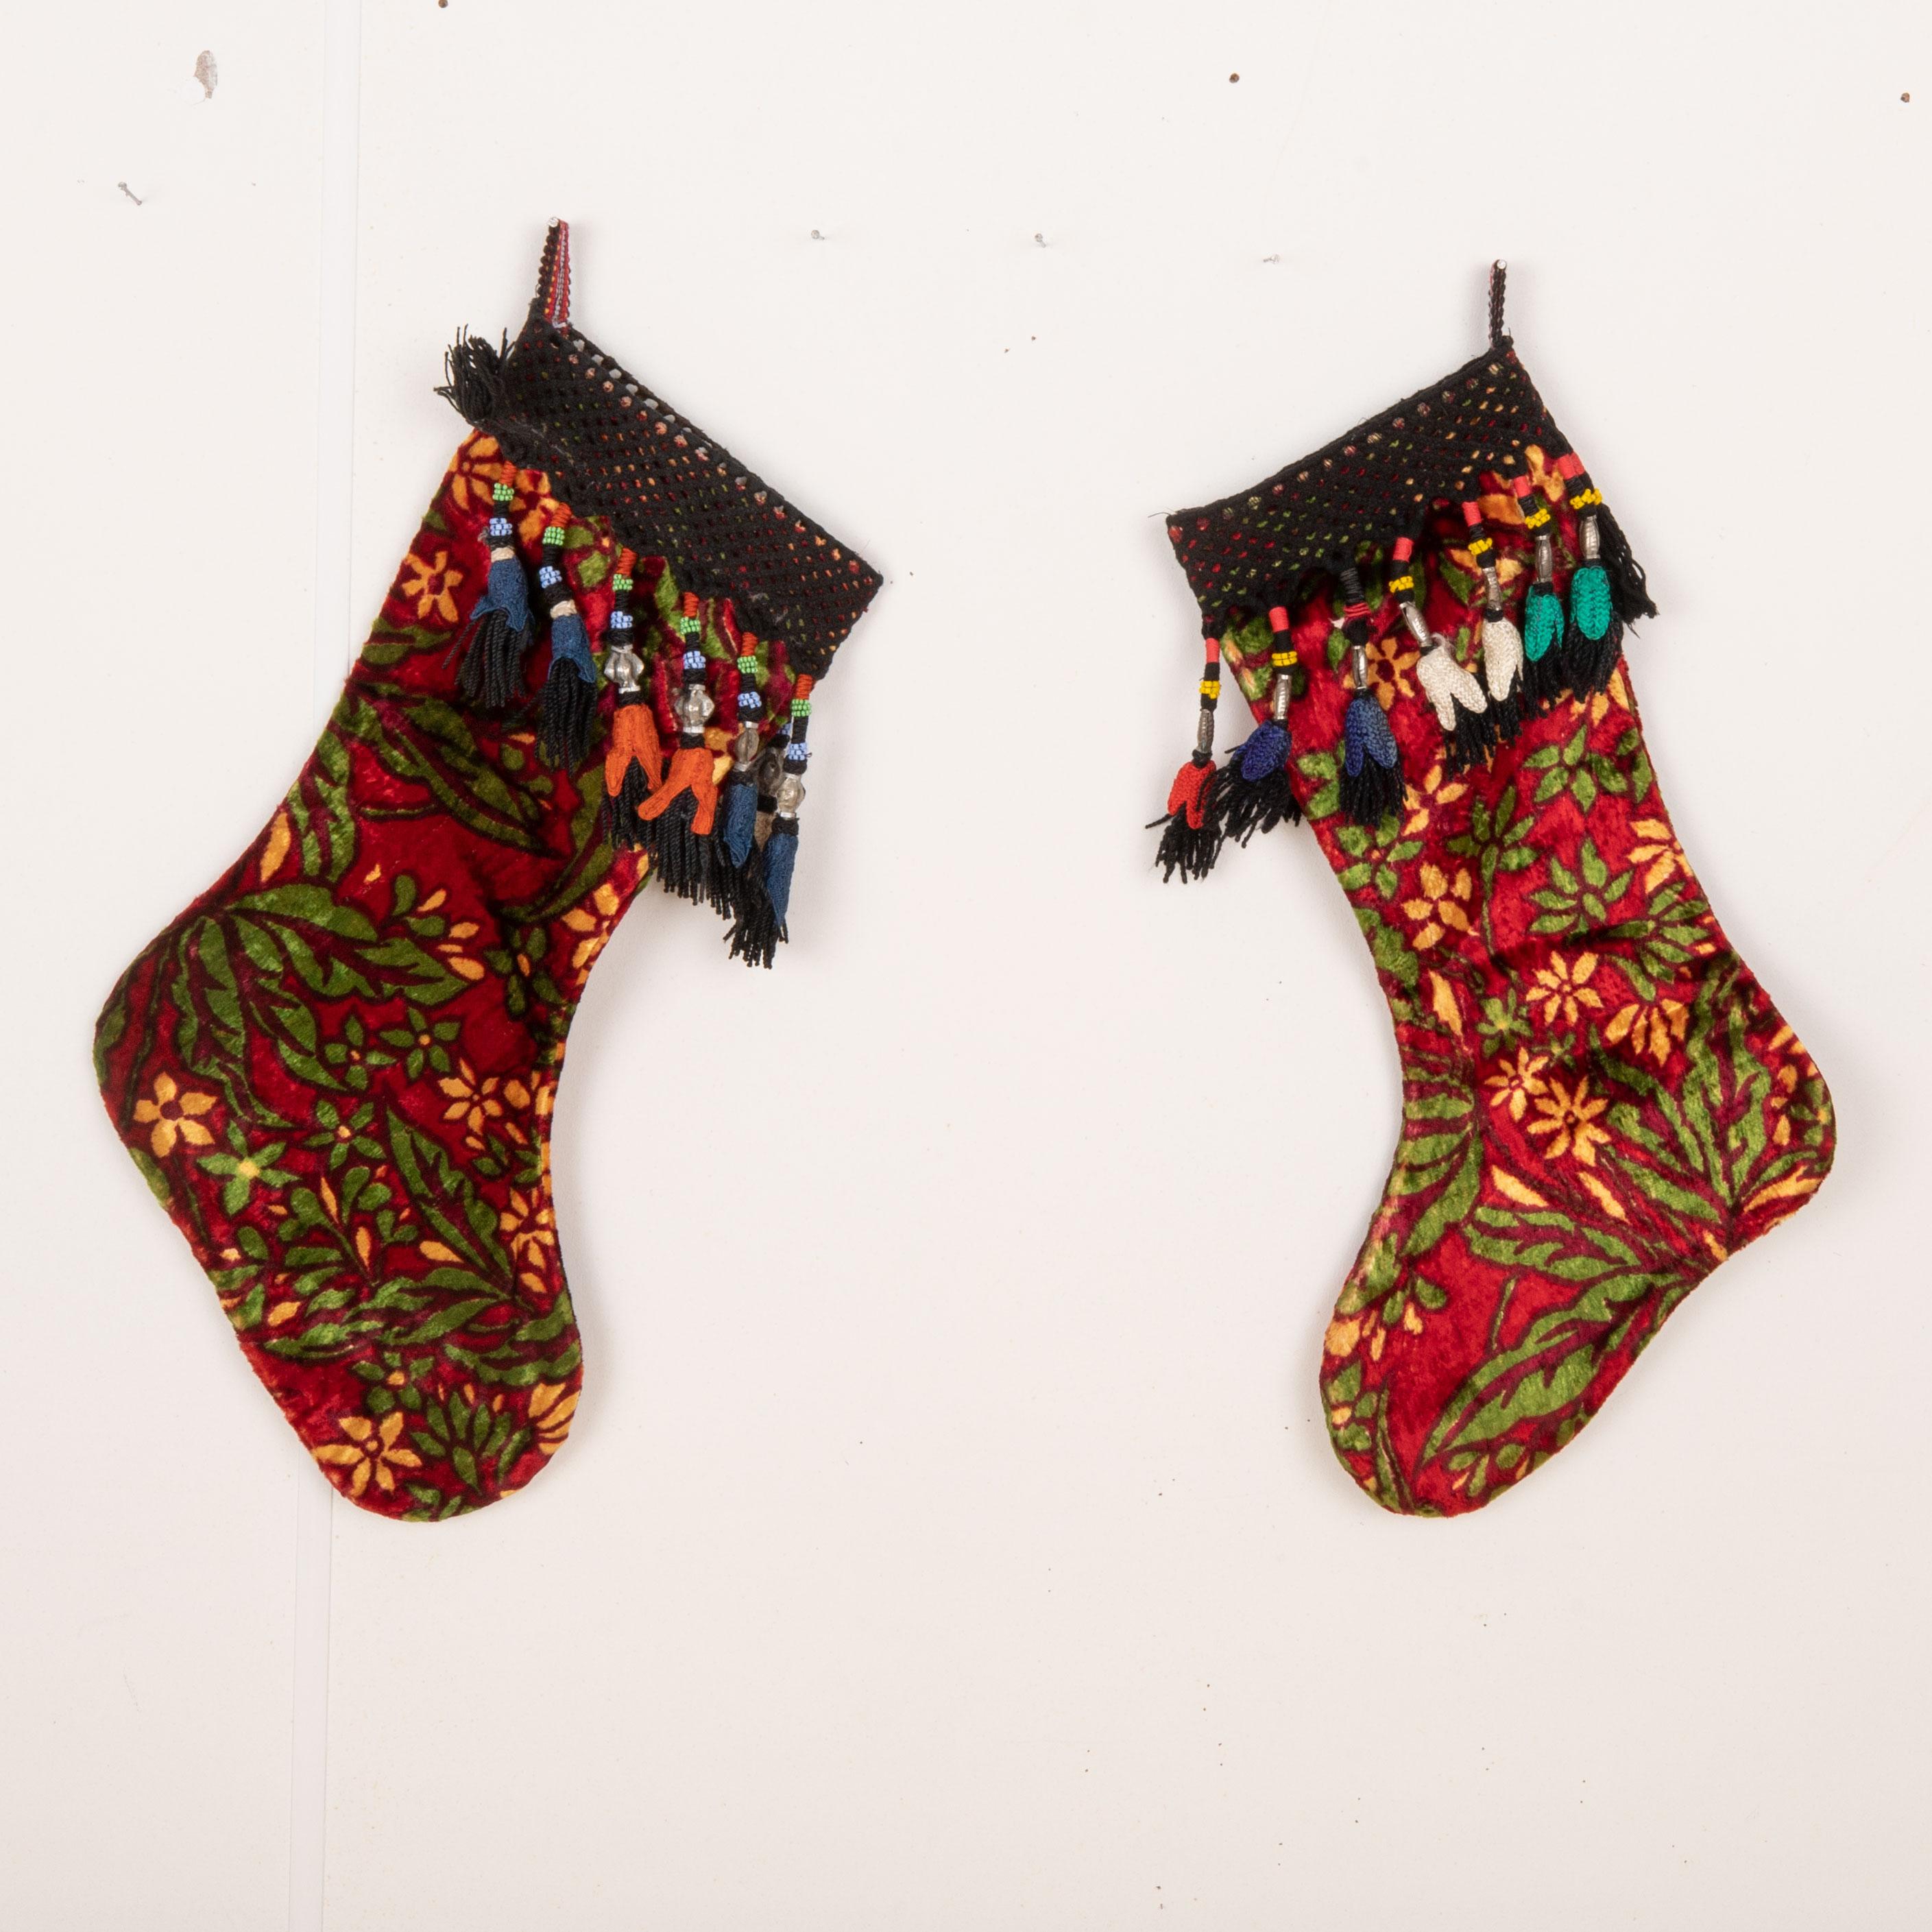 Diese Weihnachtsstrümpfe wurden Mitte des 20. Jahrhunderts aus usbekischen Samtfragmenten hergestellt.

Bitte beachten Sie, dass diese aus alten usbekischen Samtfragmenten hergestellt wurden.
